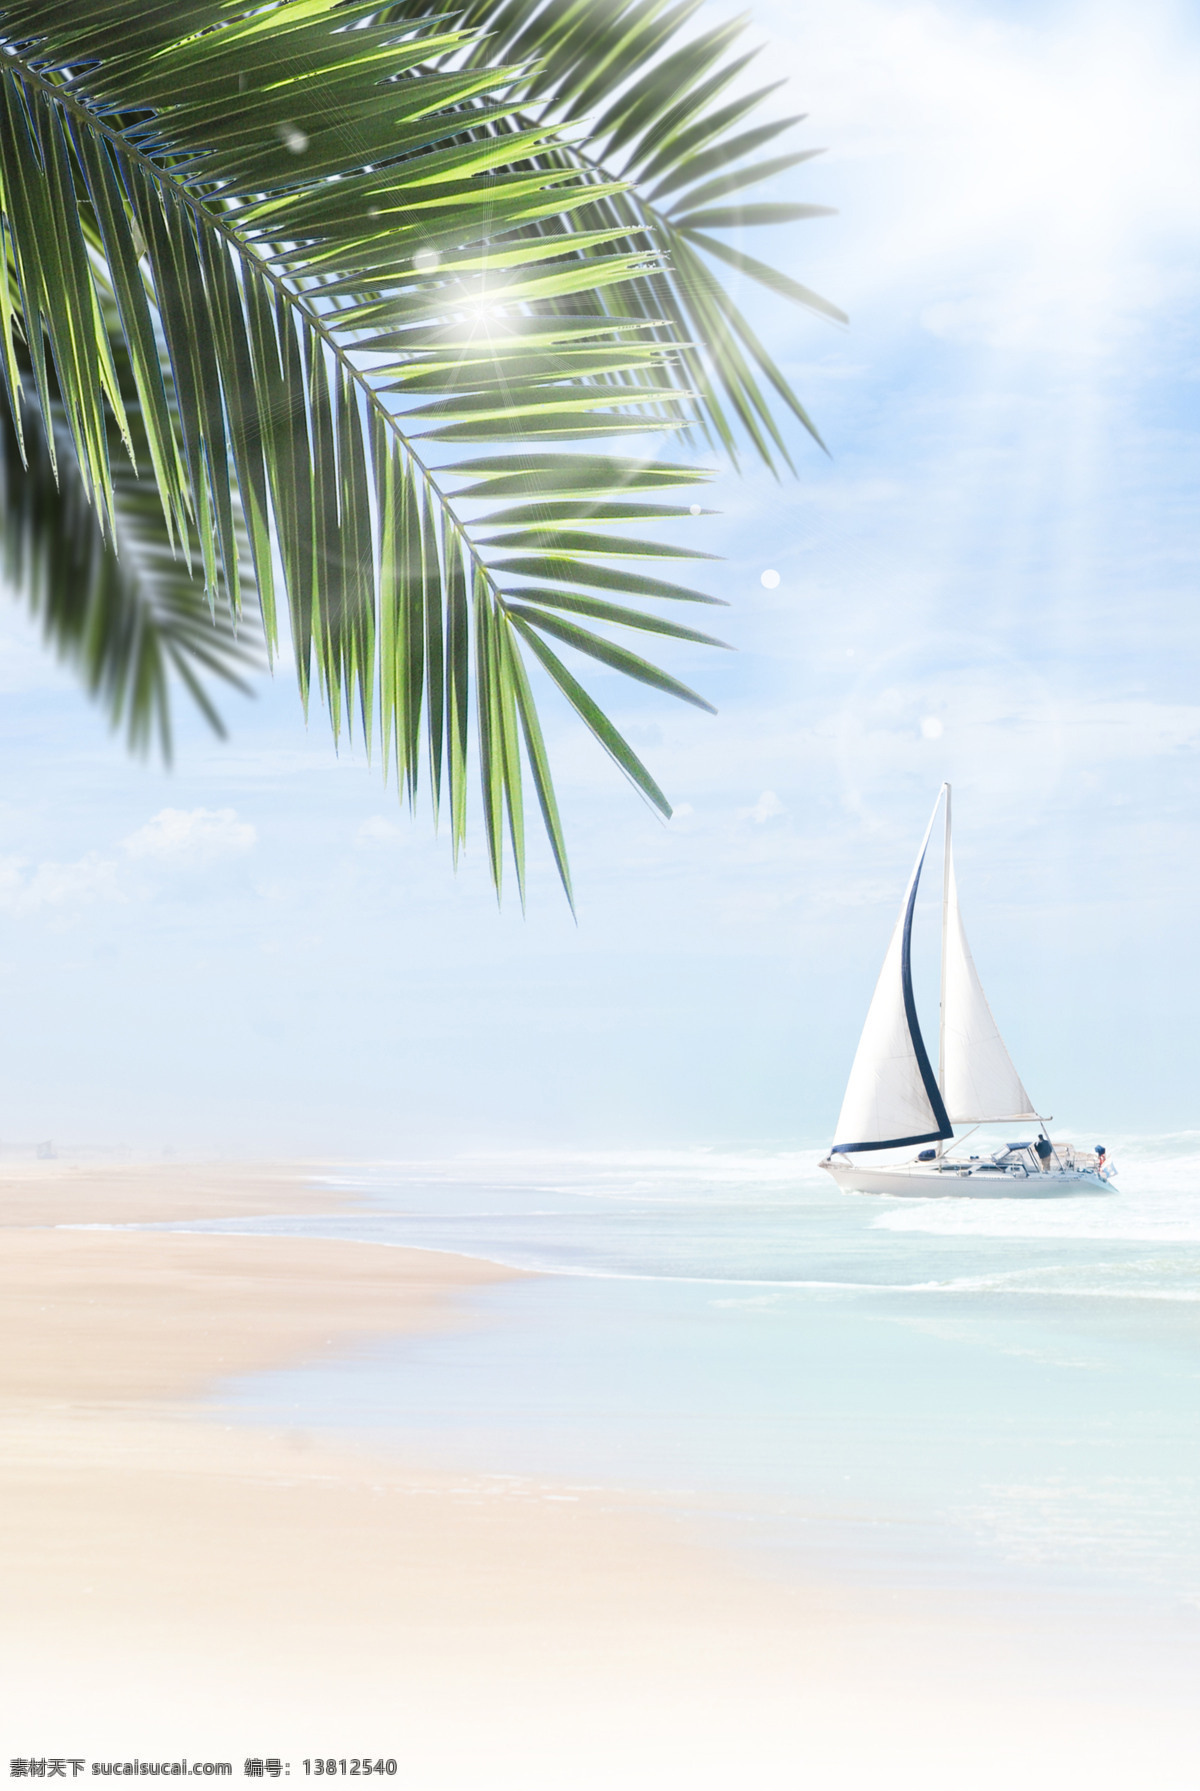 夏日 海洋 风景图片 帆船 风景 海浪 海滩 沙滩 夏日海洋风景 自然风光 自然景观